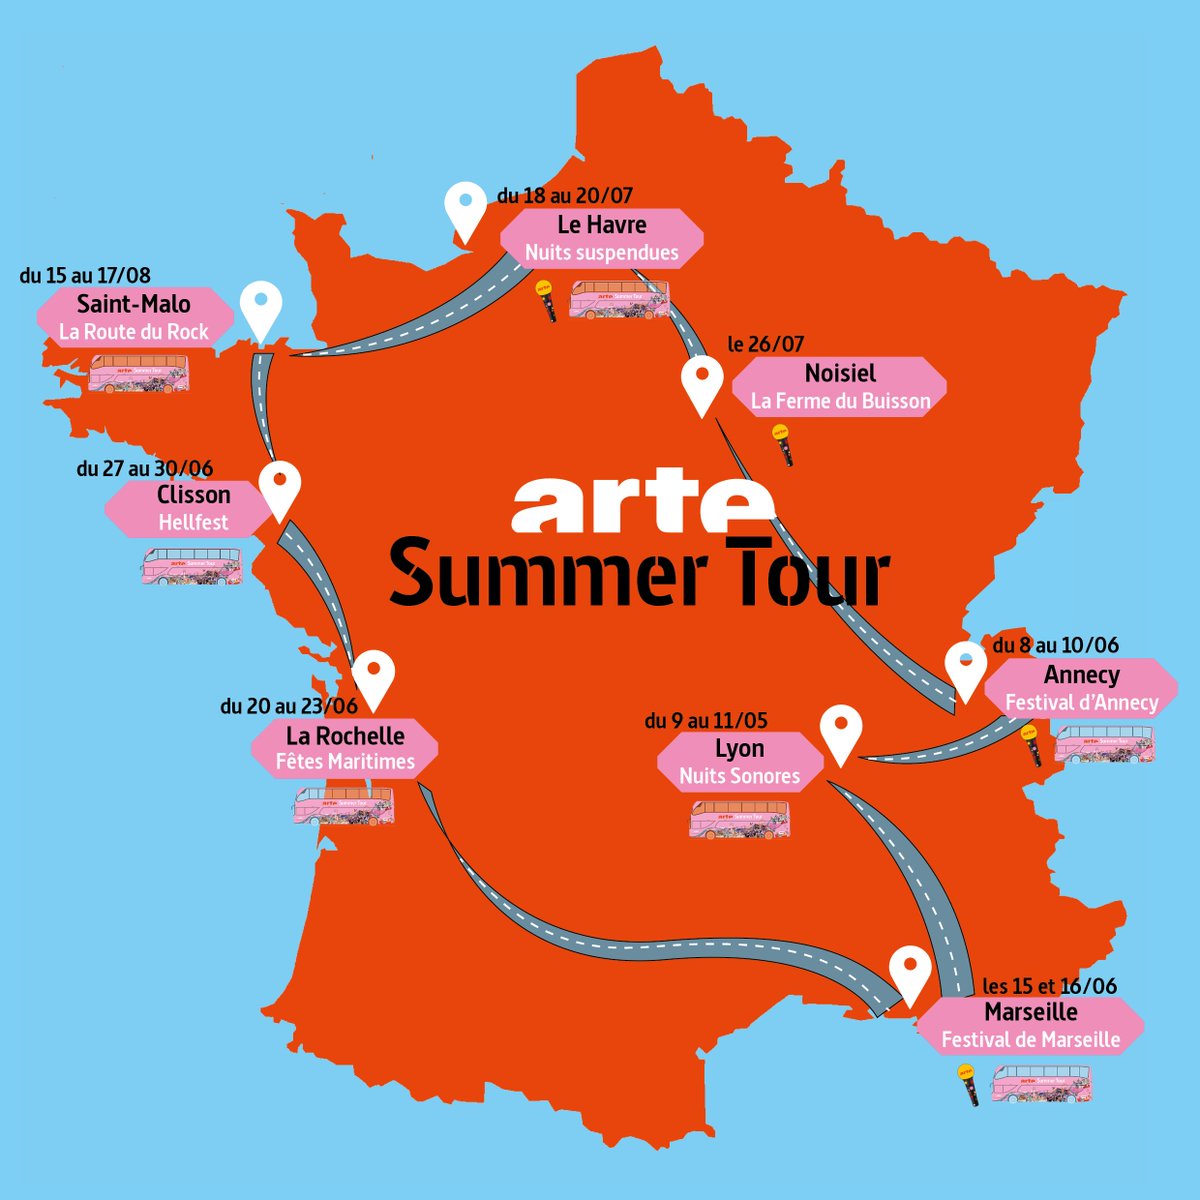 Notre Summer Bus ARTE est prêt pour son #SummerTour ! Et vous ? 🚌

🌊 9 -11.05 @nuits_sonores
🌊 8 -10.06 @annecyfestival
🌊15 -16.06 @FDanseMarseille
🌊 20 - 23.06 Fêtes Maritimes La Rochelle
🌊 26 - 30.06 @hellfestopenair
🌊18 - 20.07 @lh_lehavre 
🌊 15 -17.08 @laroutedurock